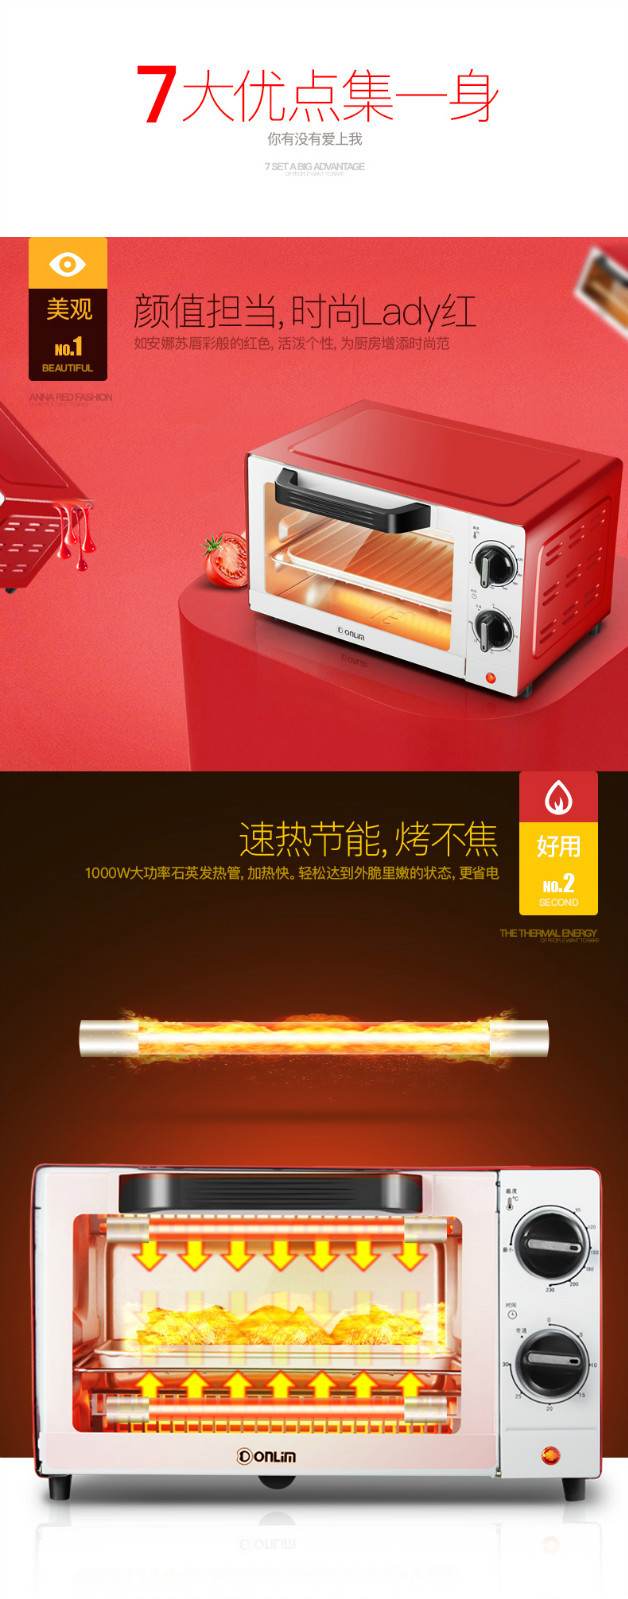 【湖南馆】东菱（Donlim） 电烤箱TO-610H